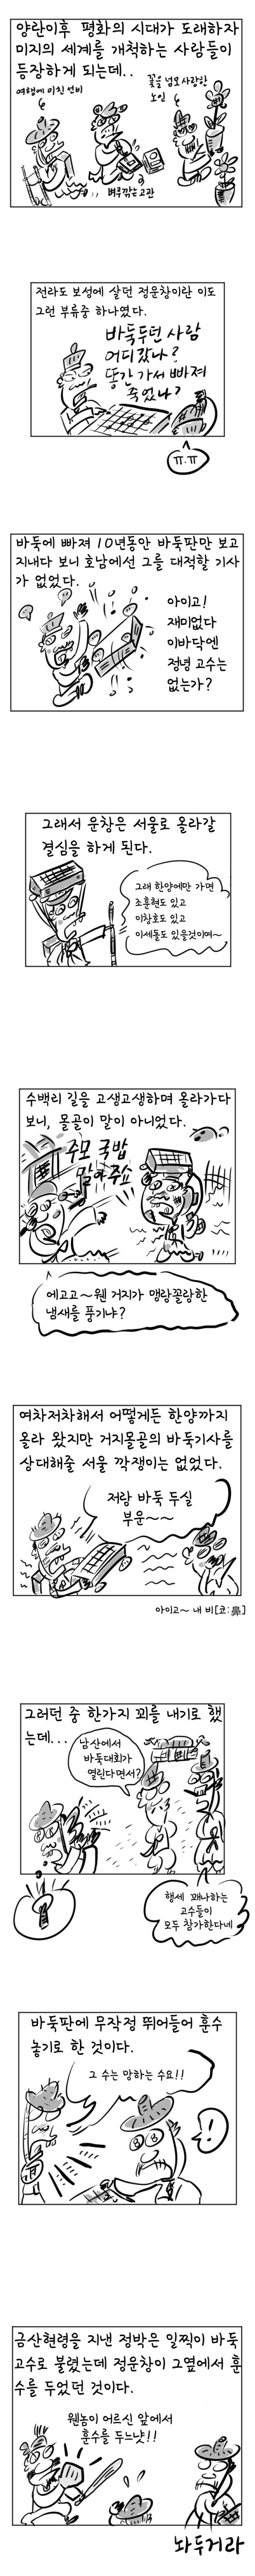 [역사툰] 史(사)람 이야기 5화: 조선 알파고, 정운창
